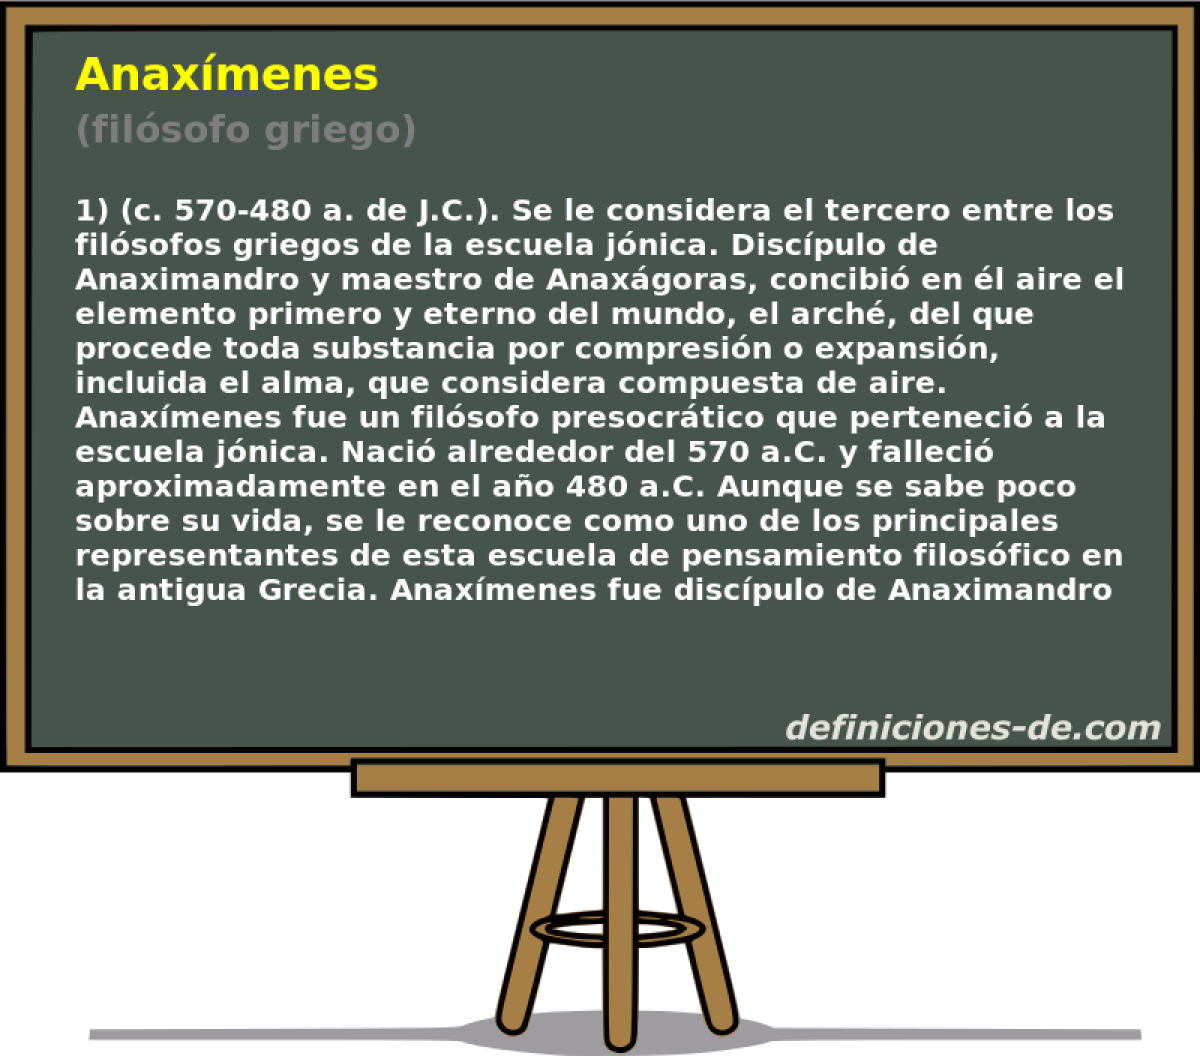 Anaxmenes (filsofo griego)